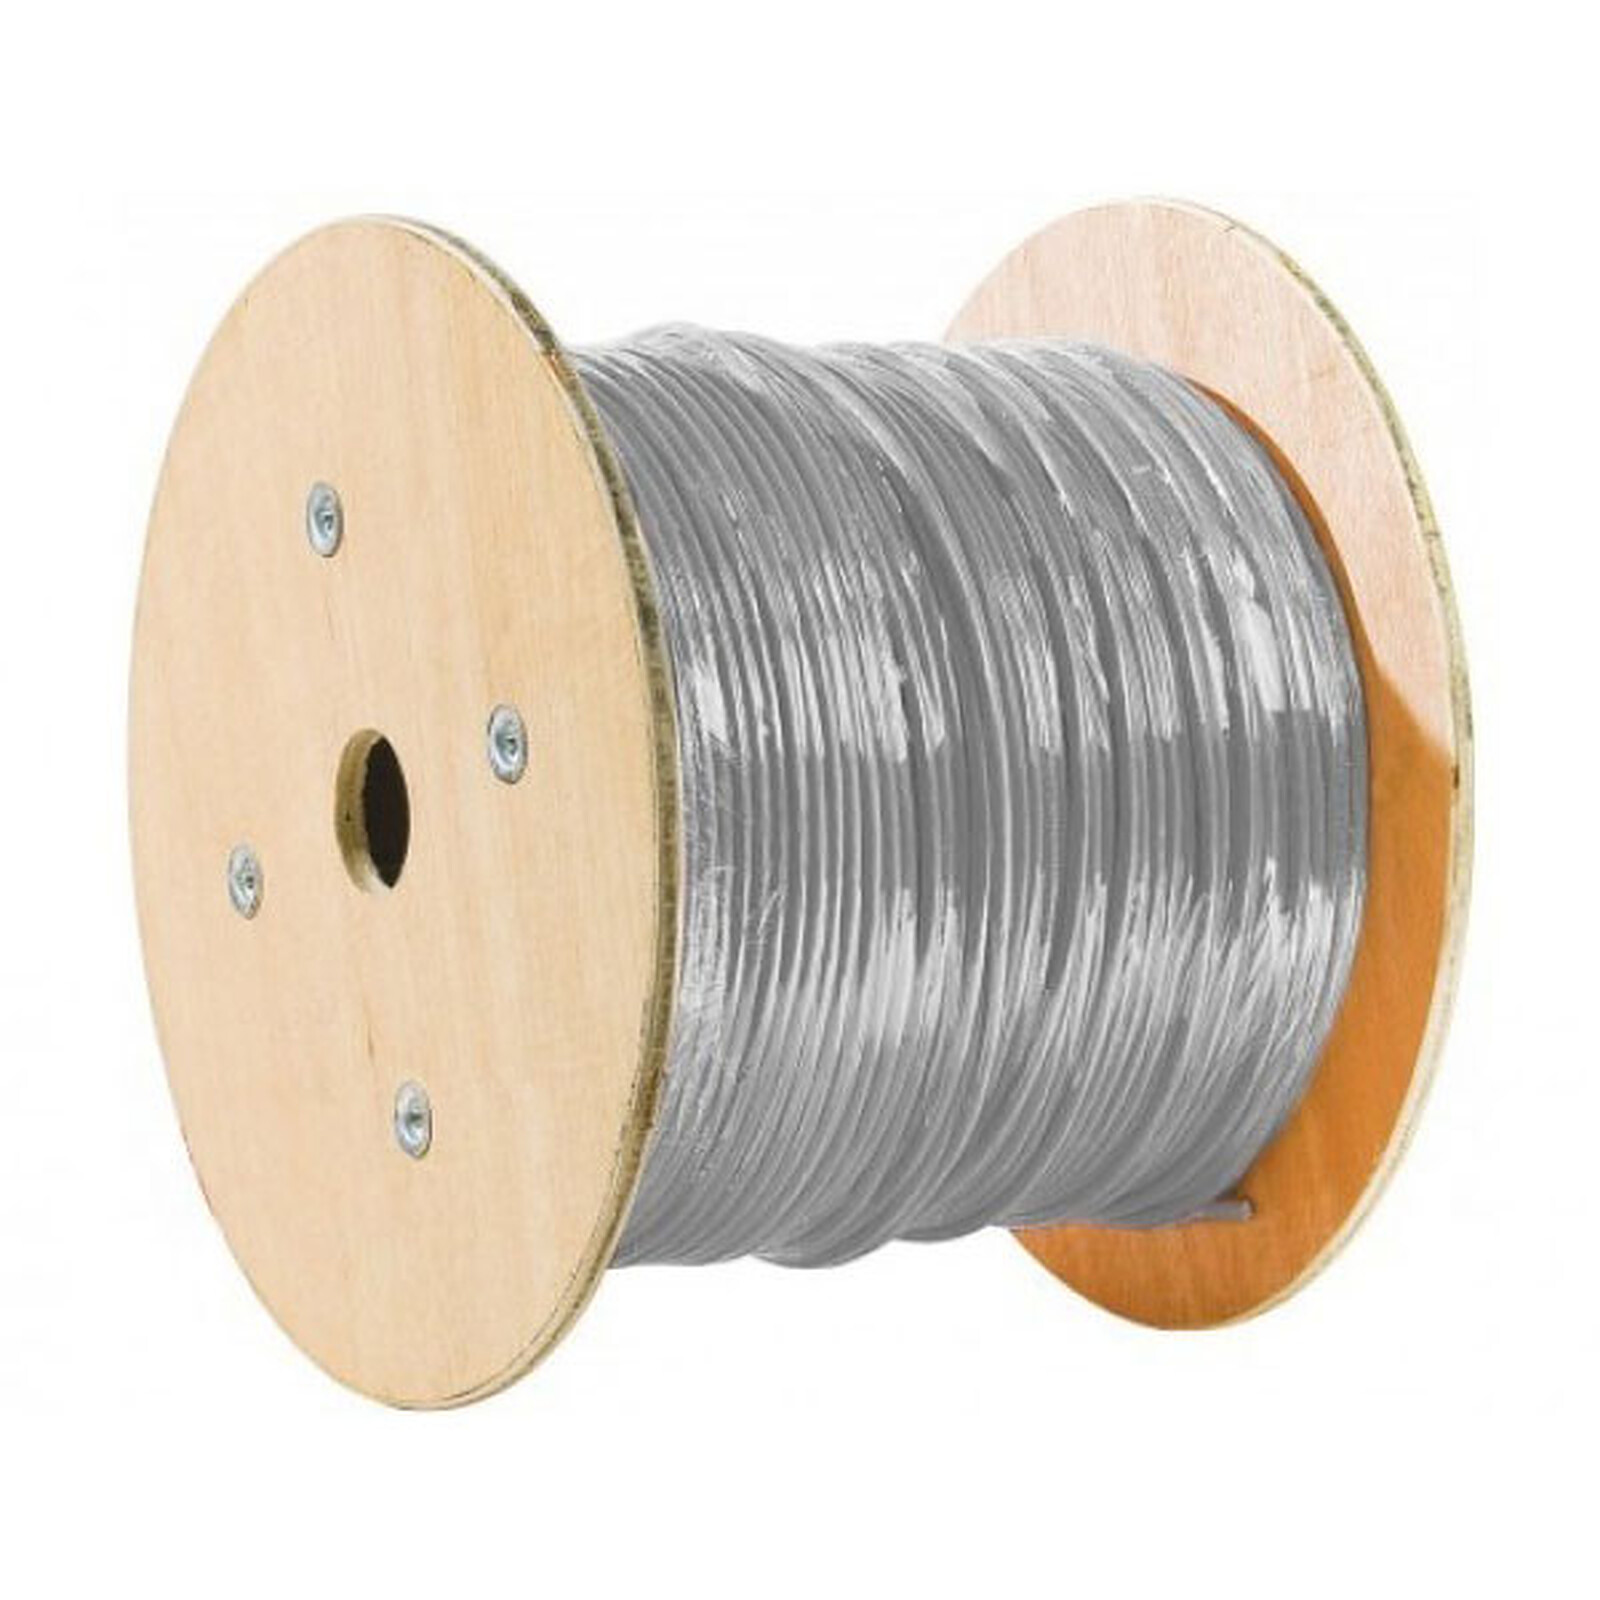 Cable RJ45 de categoría 6a F/UTP 2 m (gris) - Cable RJ45 - LDLC